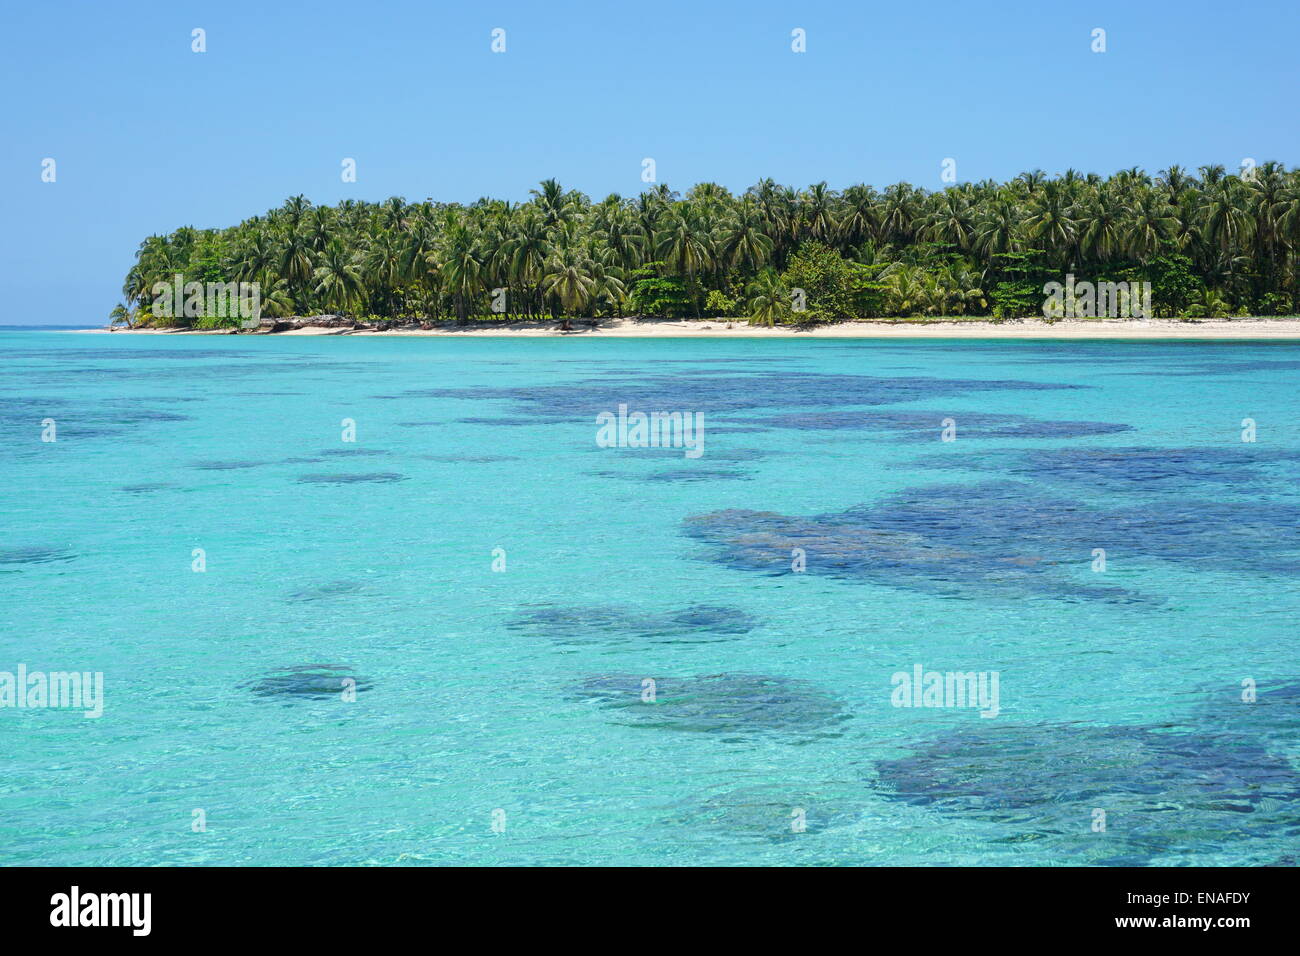 L'eau turquoise avec les coraux de surface de la mer ci-dessous ainsi qu'une île tropicale intacte en arrière-plan, des Caraïbes, Cayos Zapatilla, Panama Banque D'Images